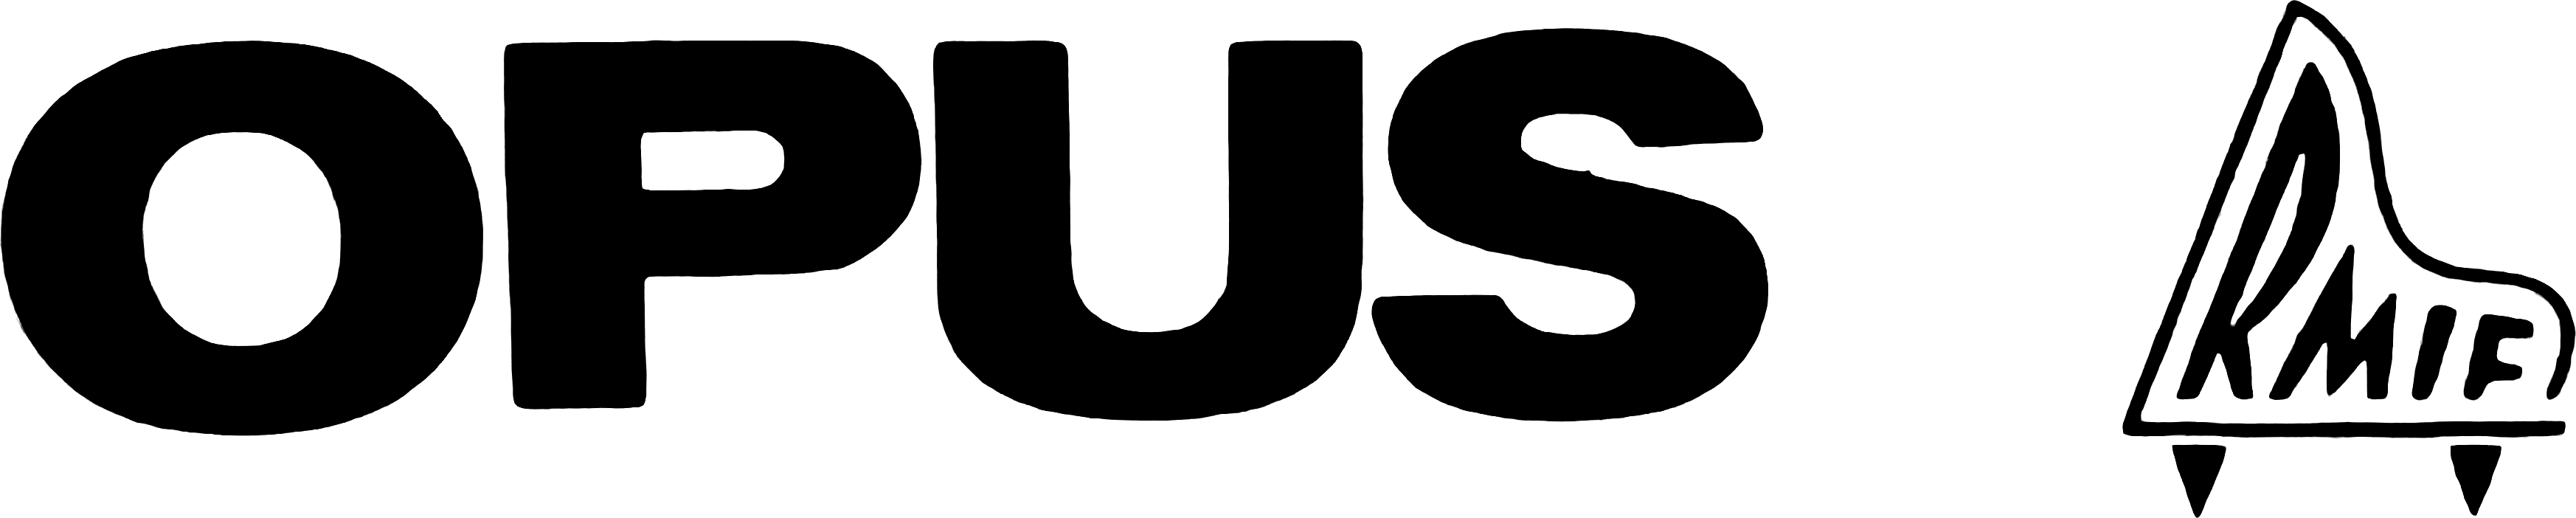 OPUS_RMIF_logo